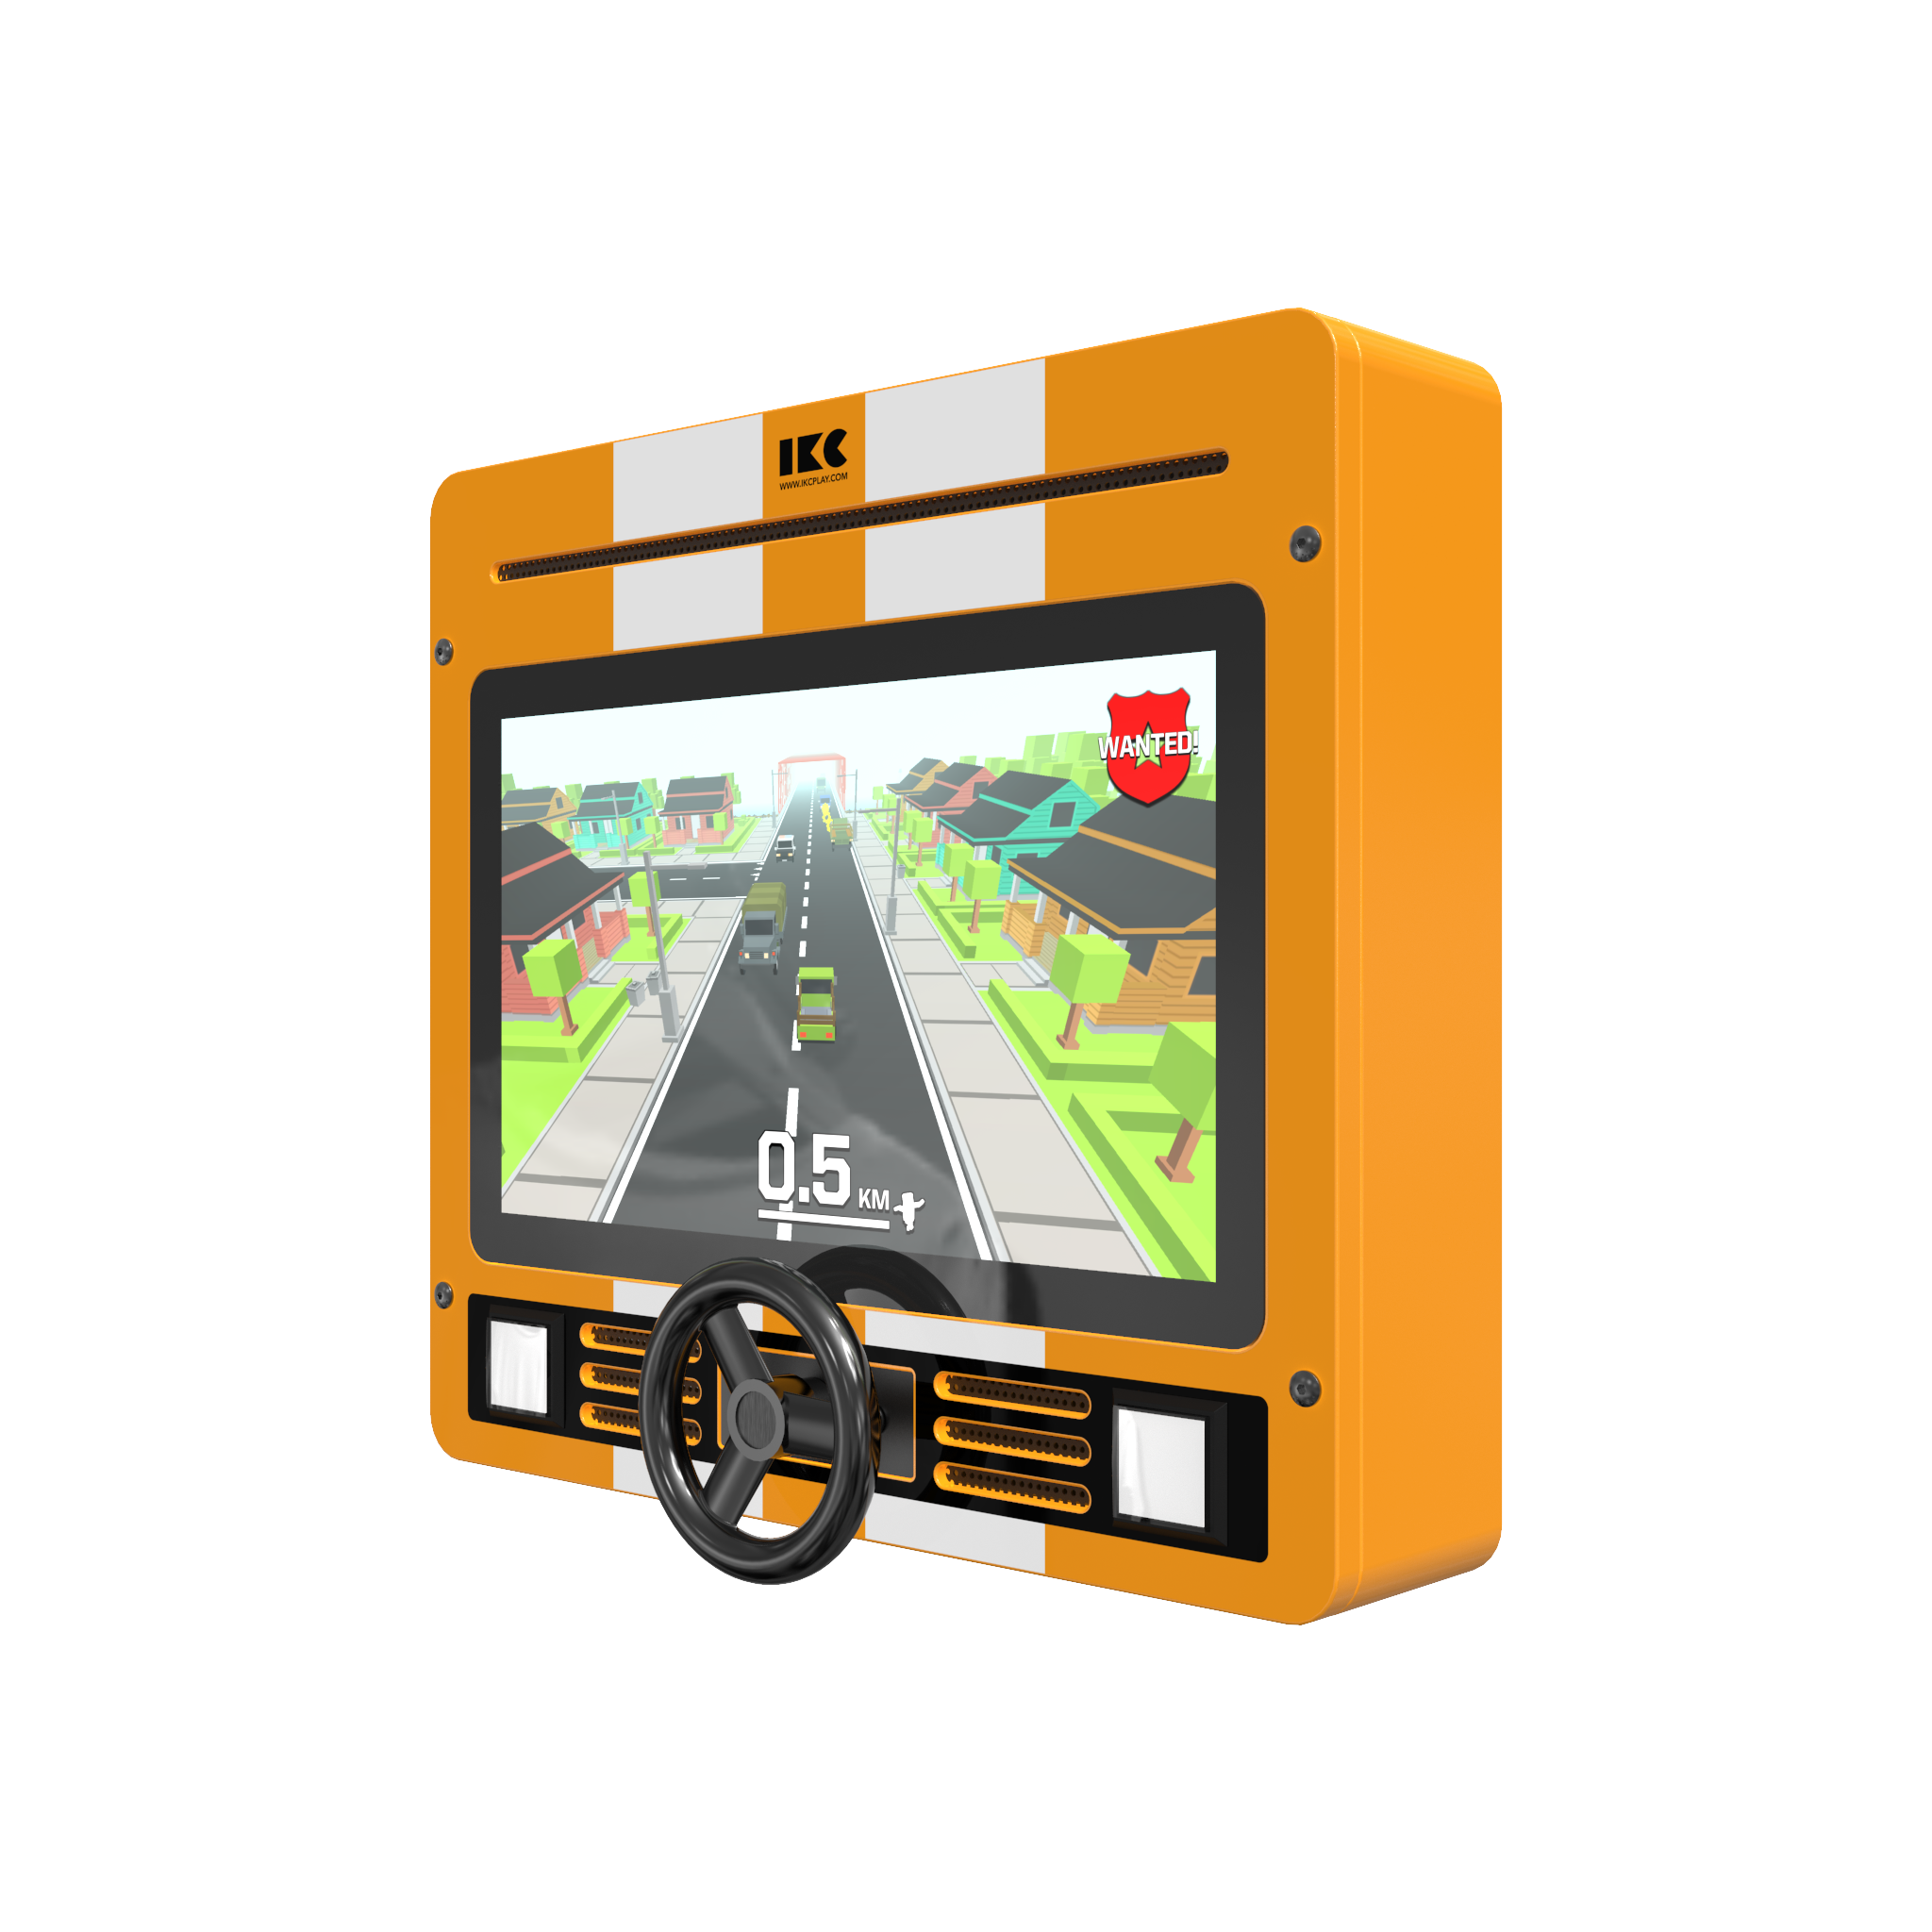 L'image montre un système de jeu interactif Delta 21 inch Nitro dash